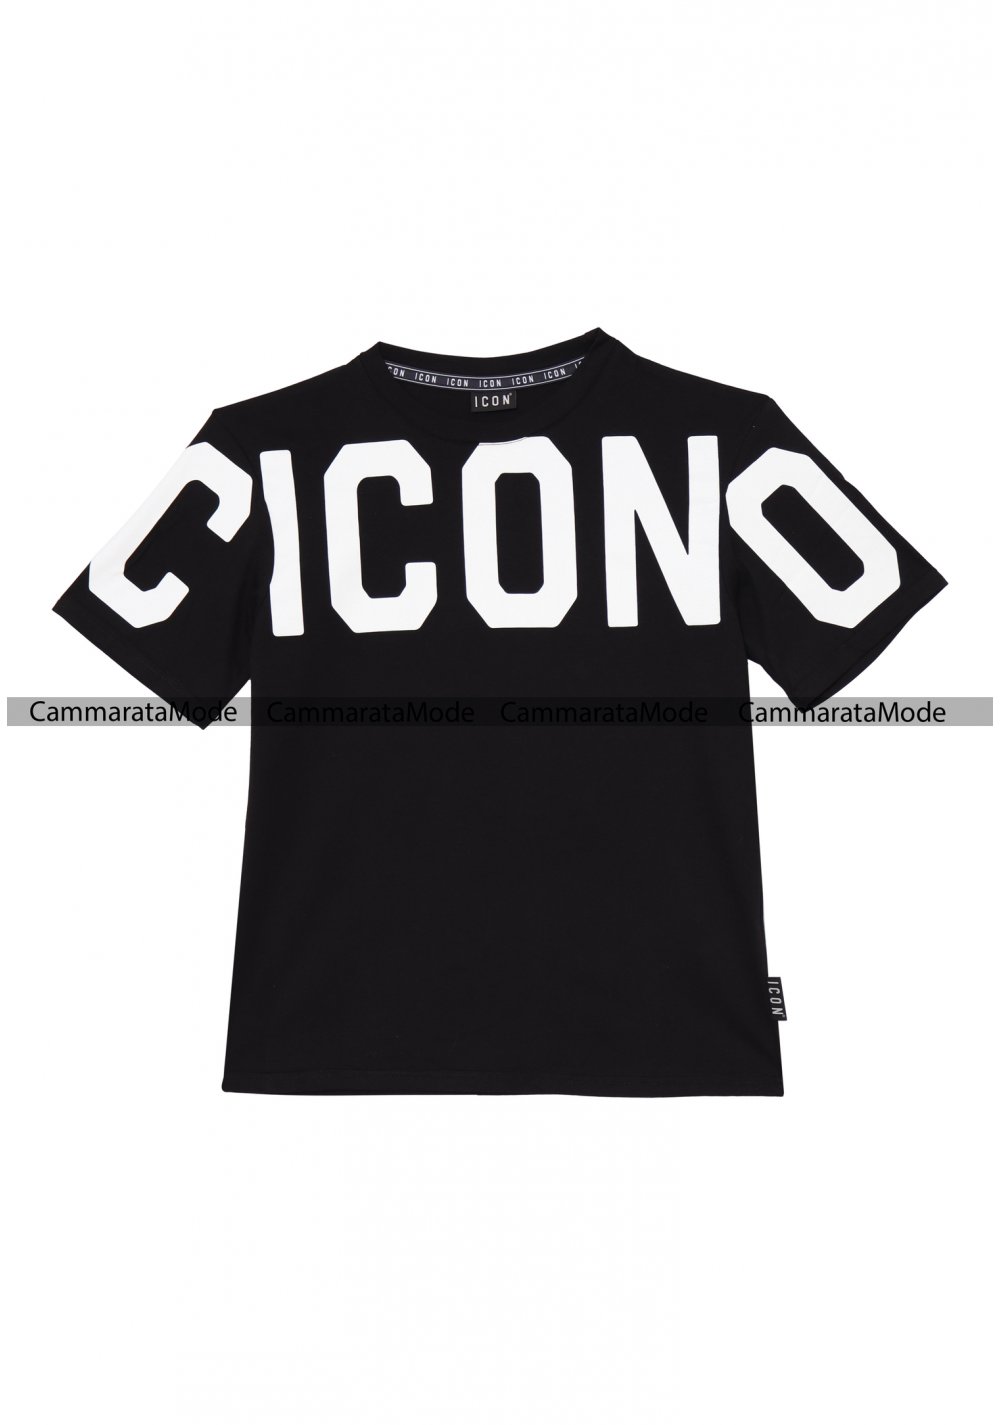 T-shirt uomo ICON - Shirt nera con grande logo sulle spalle a maniche corte